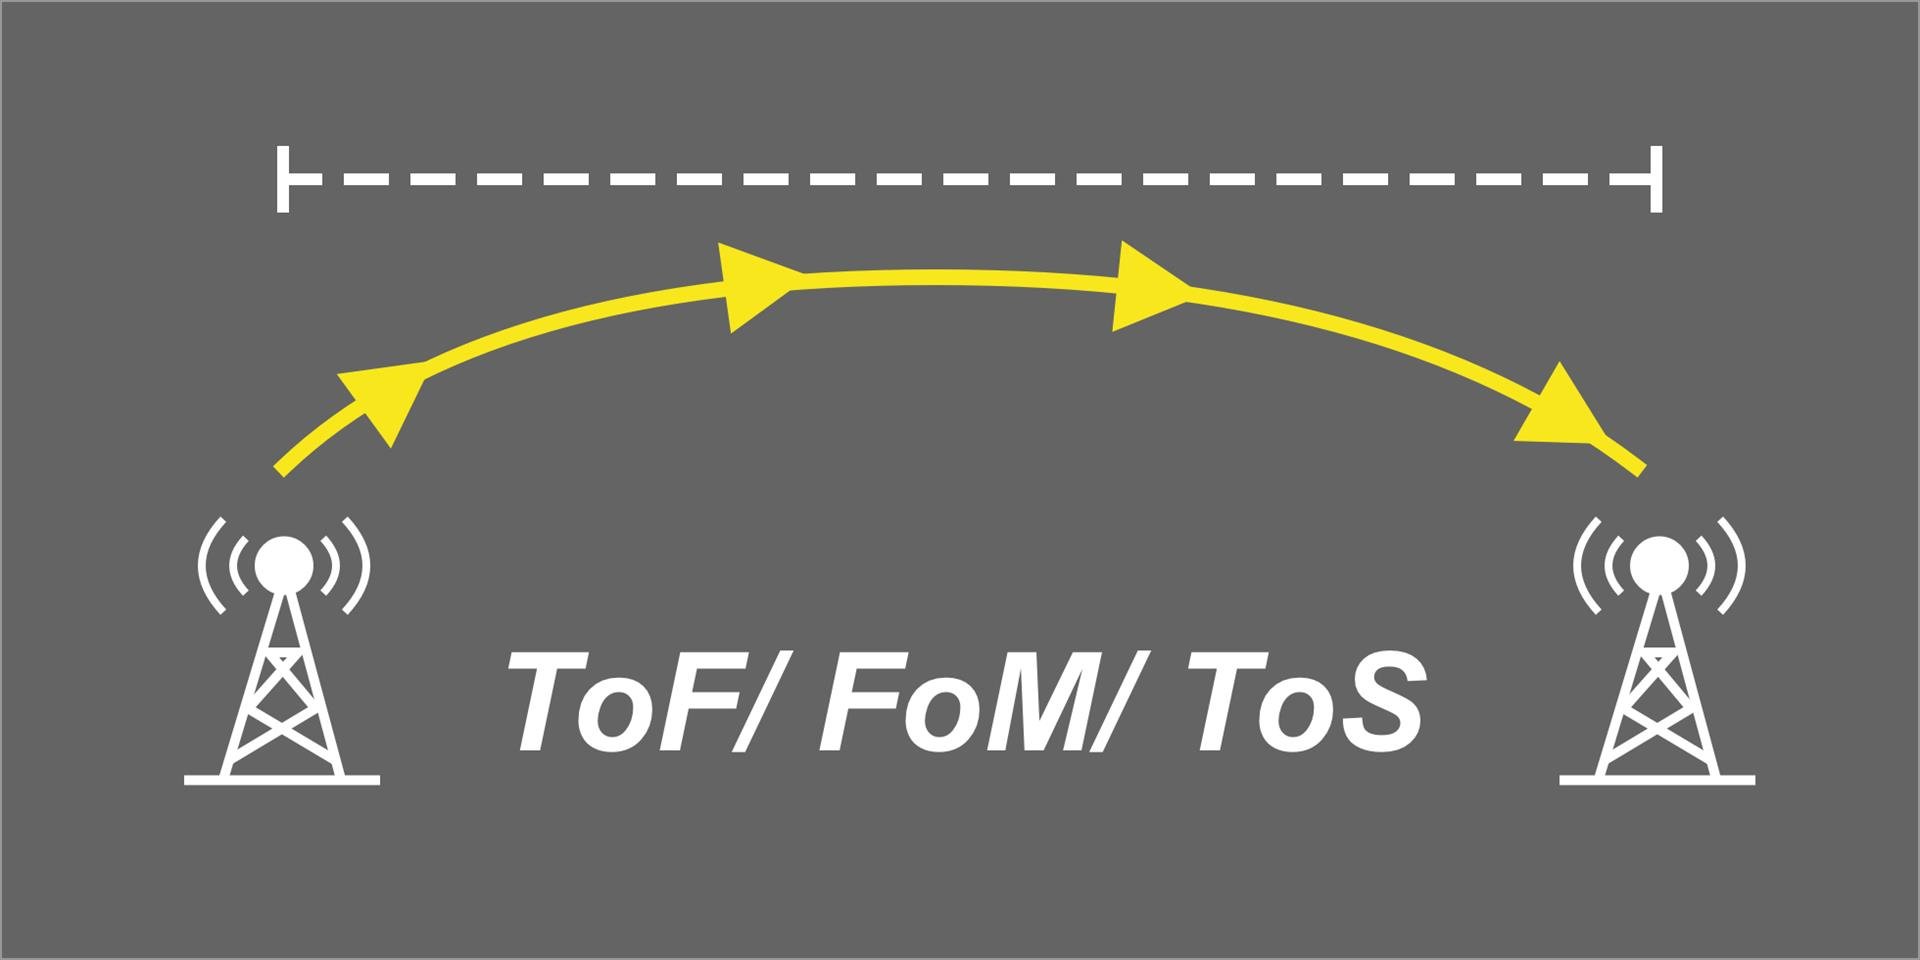 圖中顯示了兩個無線電塔之間的訊號傳輸，代表時間飛行（ToF）、測量時間（ToM）和理論時間（ToS）的概念。 黃色箭頭表示訊號在兩點之間的傳播路徑。